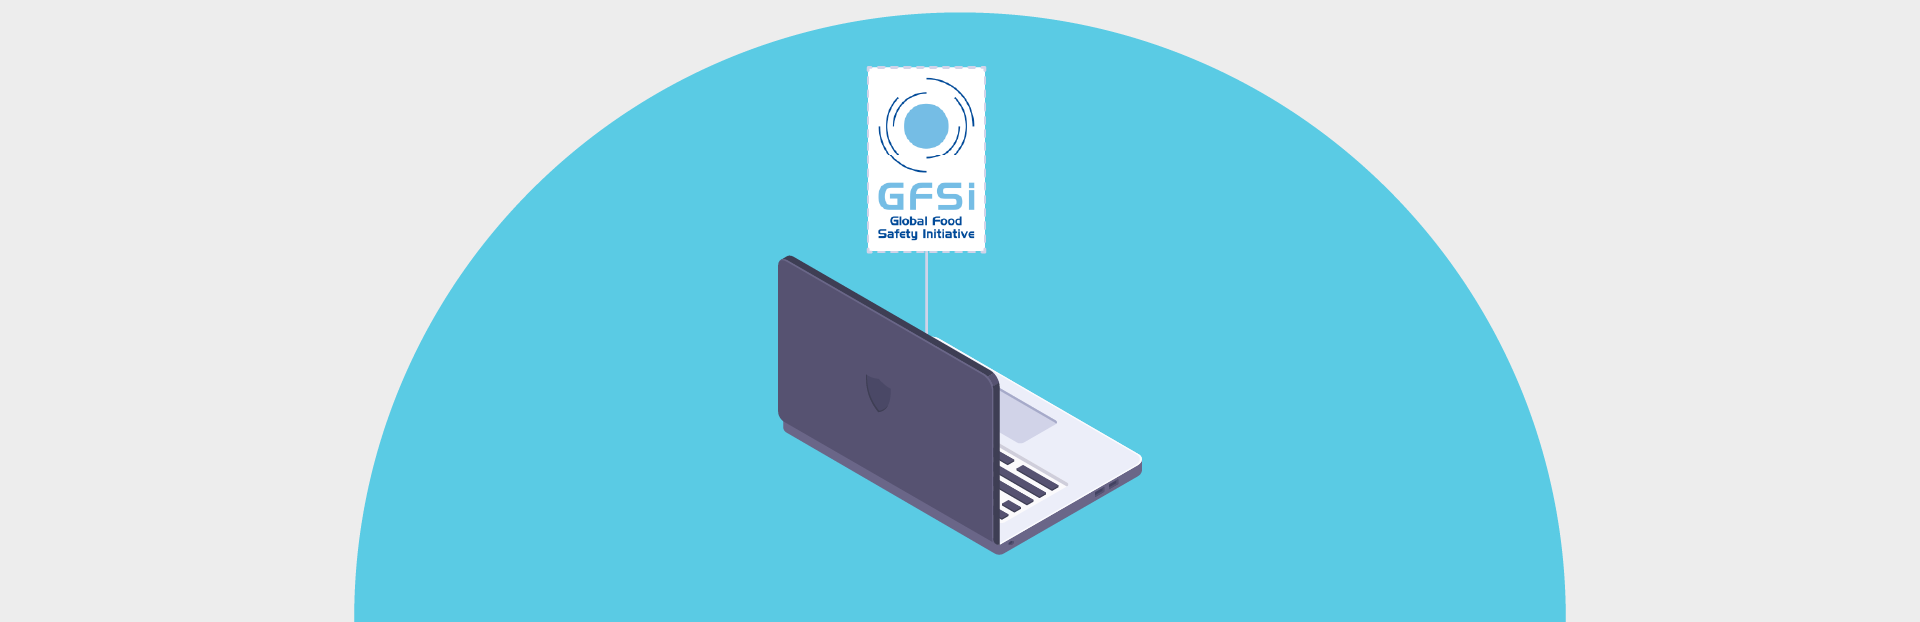 Atendendo a GSFI e conhecendo suas diferenças